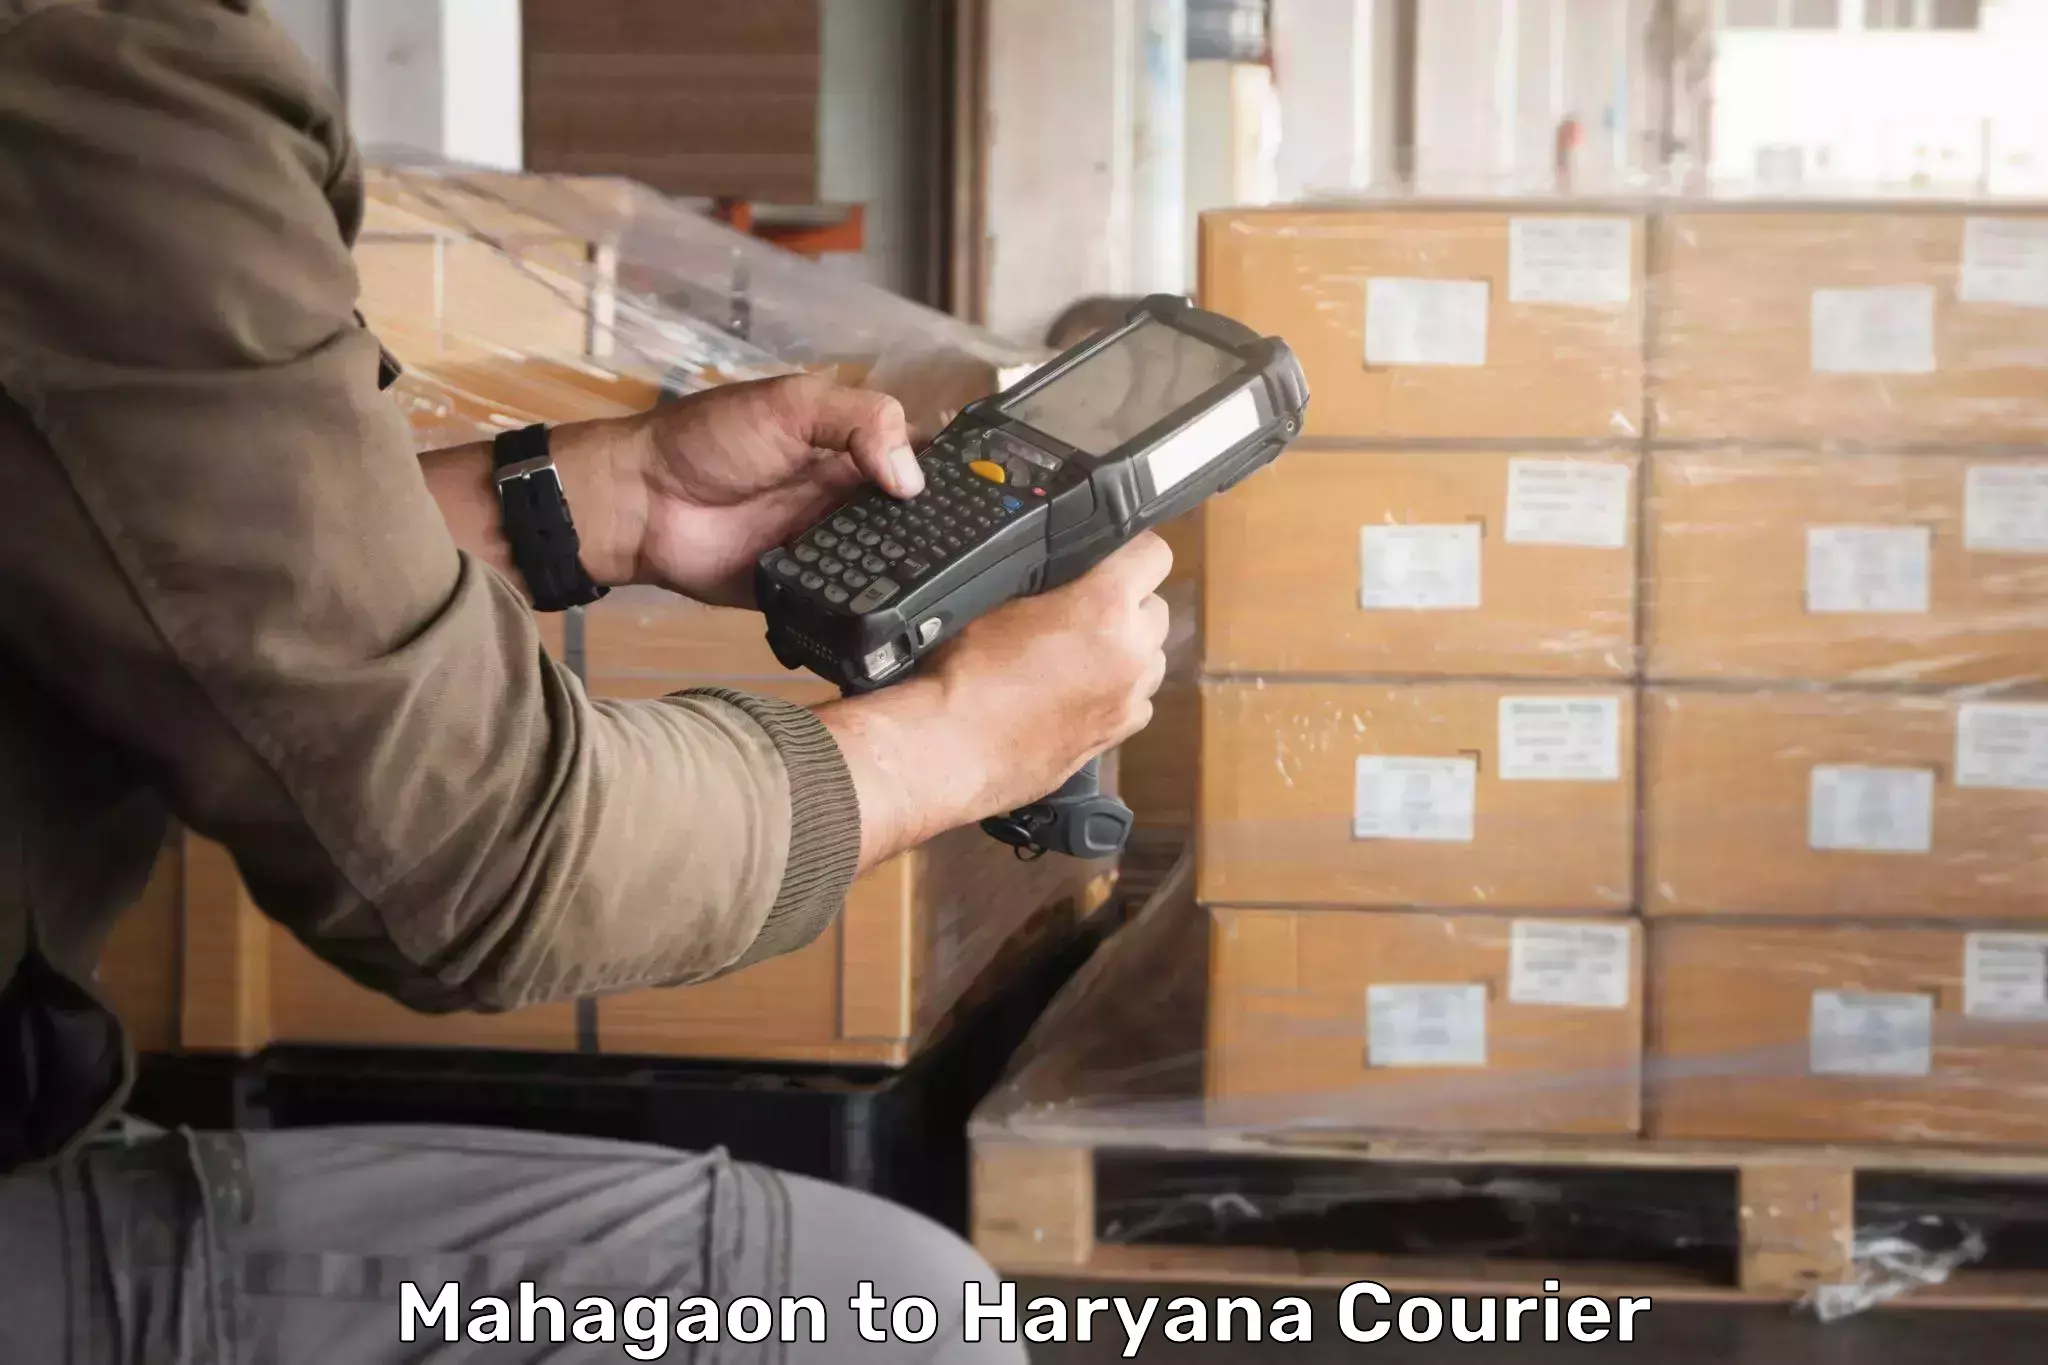 24/7 shipping services Mahagaon to Gohana